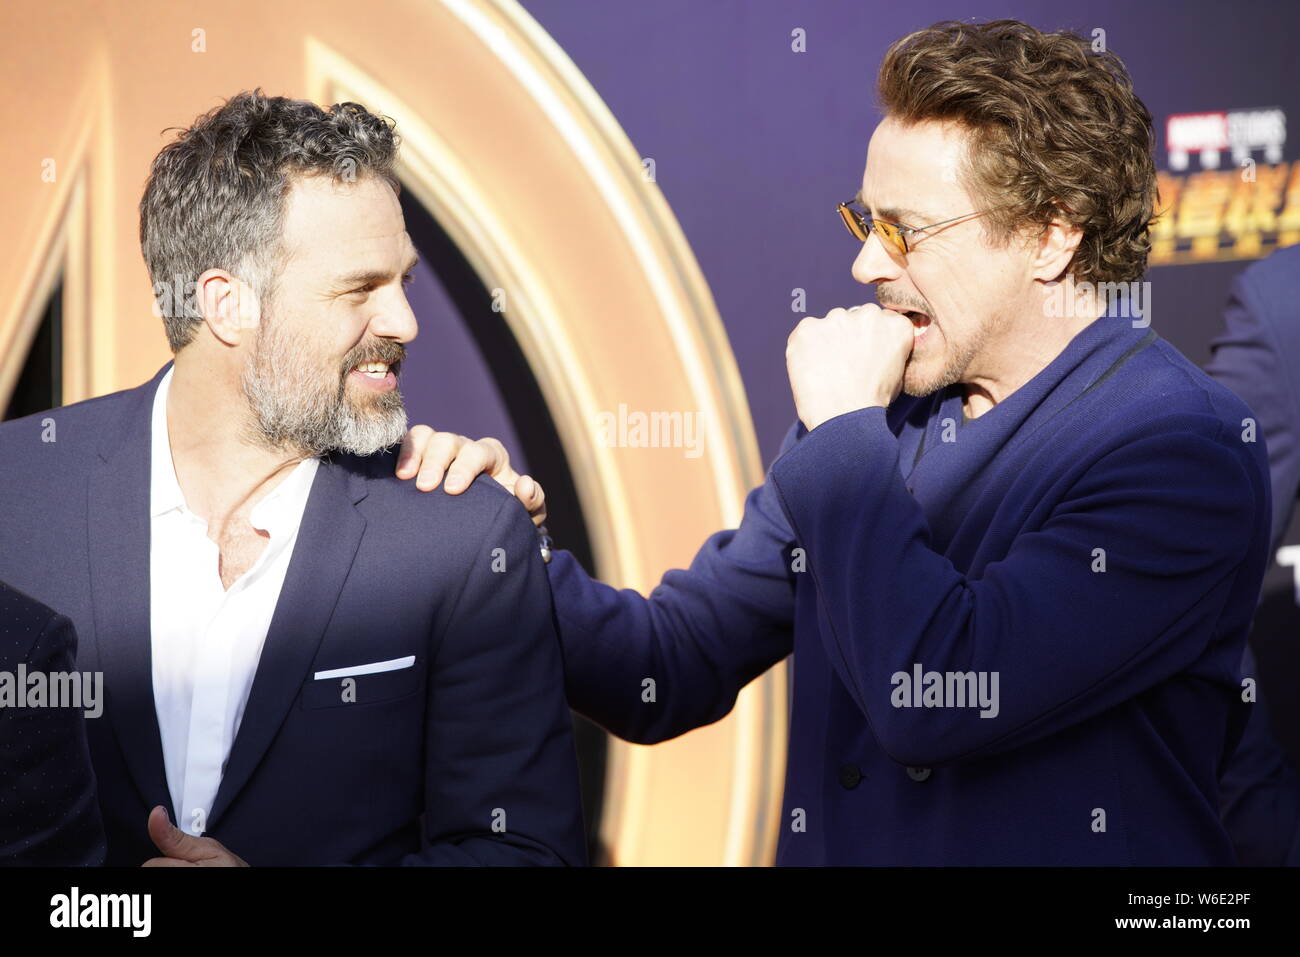 (De gauche) l'acteur et chanteur américain Robert Downey Jr. et Tom Hiddleston acteur anglais posent à leur arrivée sur le tapis rouge d'un événement promotionnel Banque D'Images